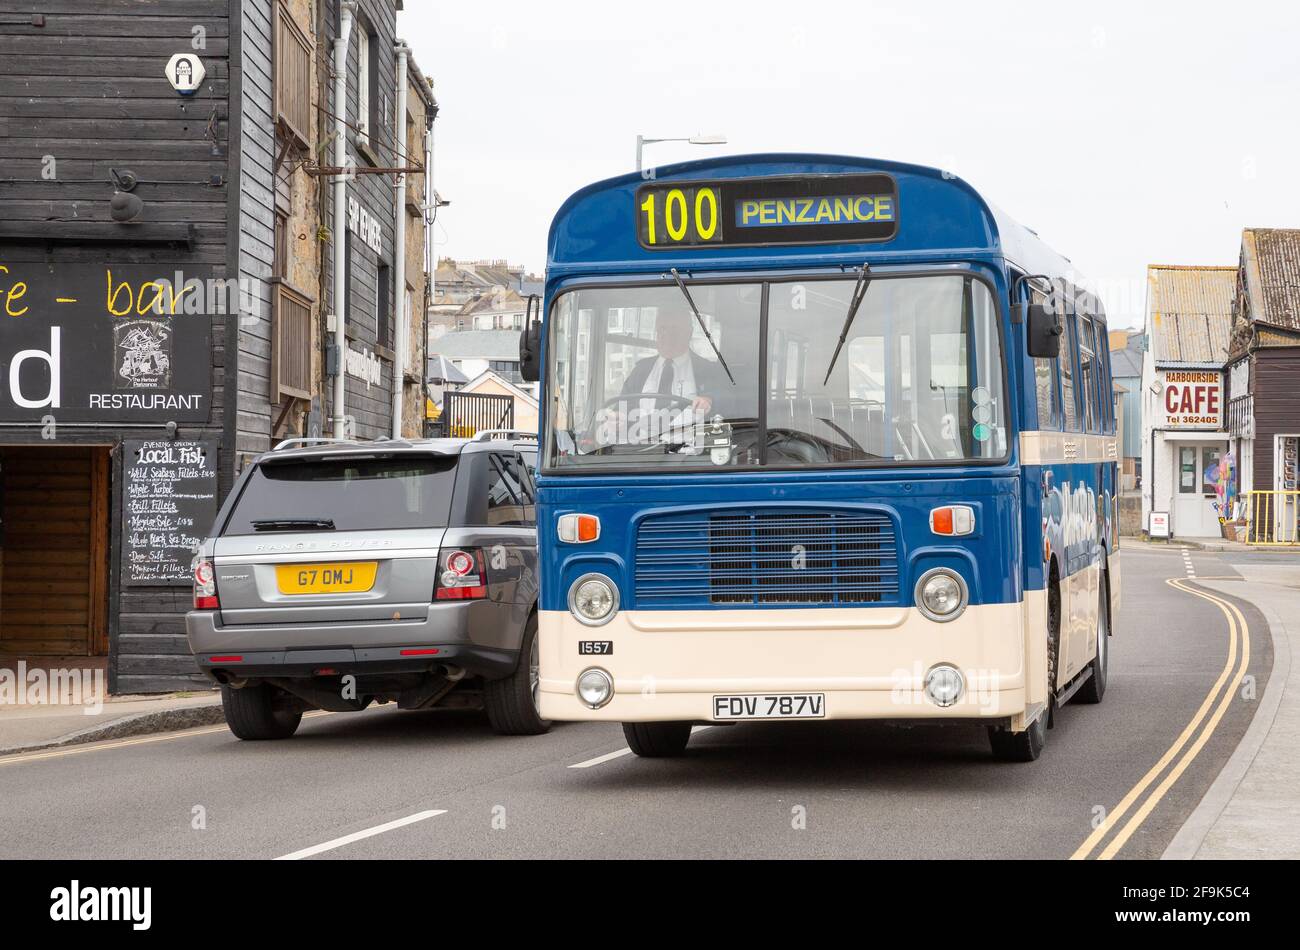 Bus numéro 100 avec plaque d'immatriculation FDV 787V autobus vintage traversant Penzance à Cornwall, Royaume-Uni Banque D'Images